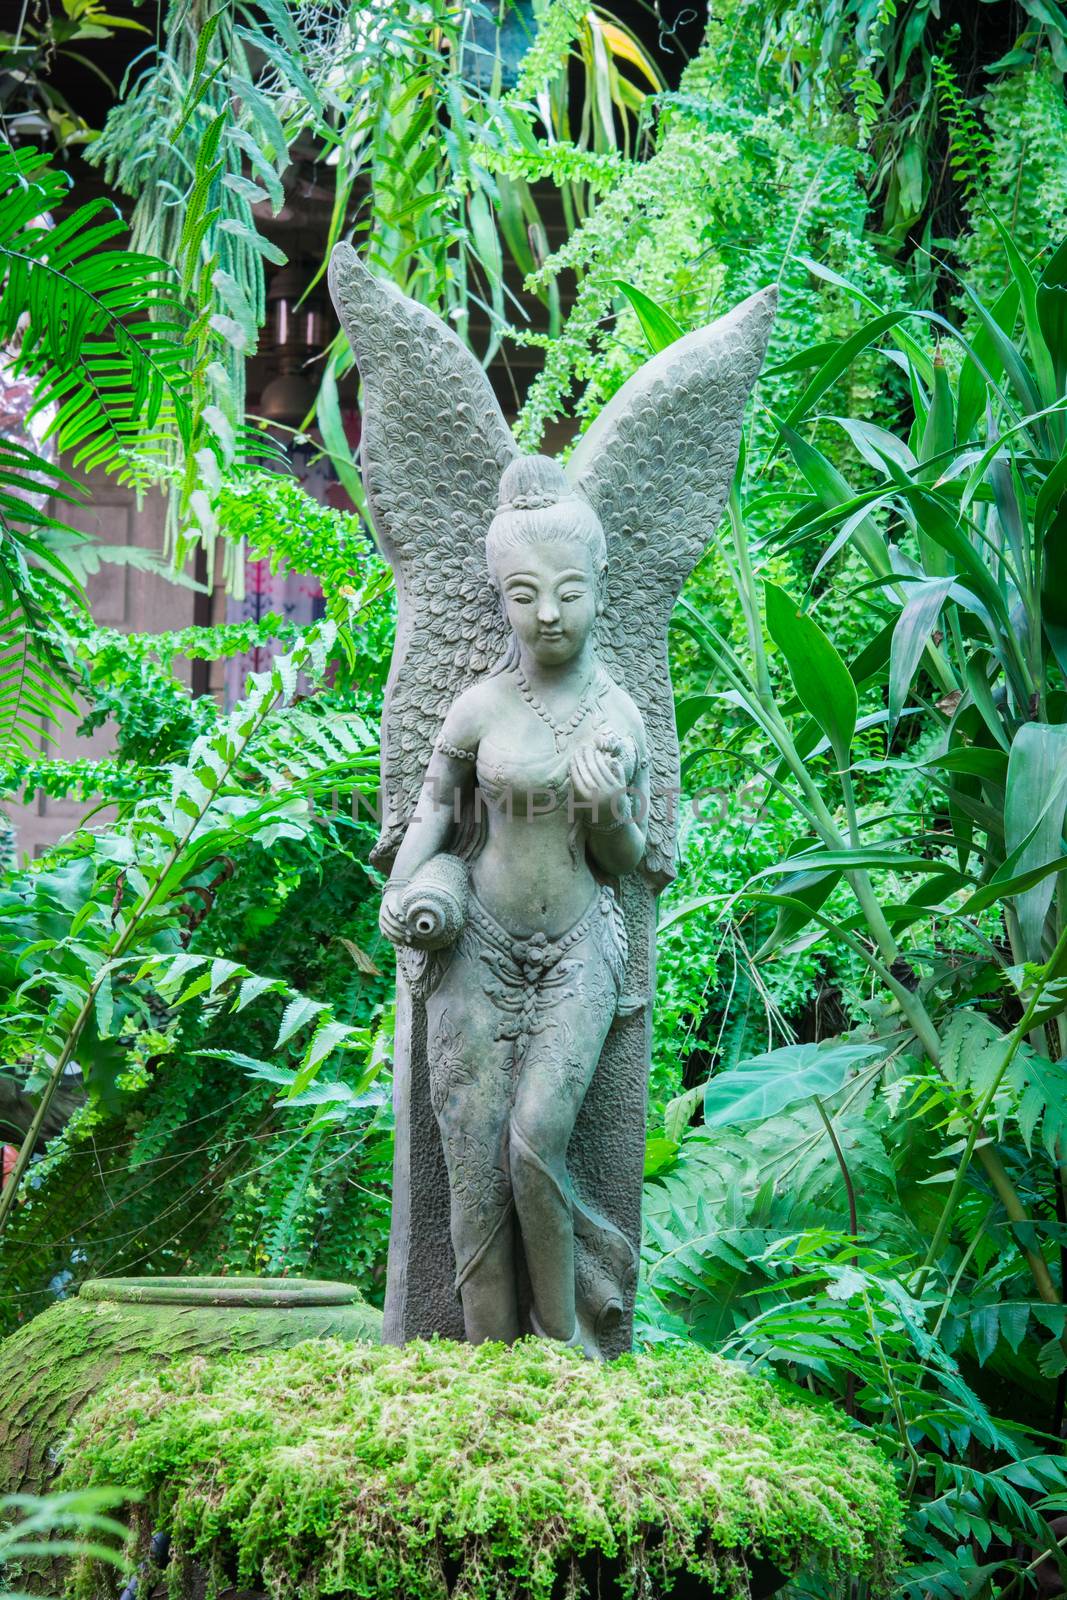 Fairy statue in the garden by Sorapop